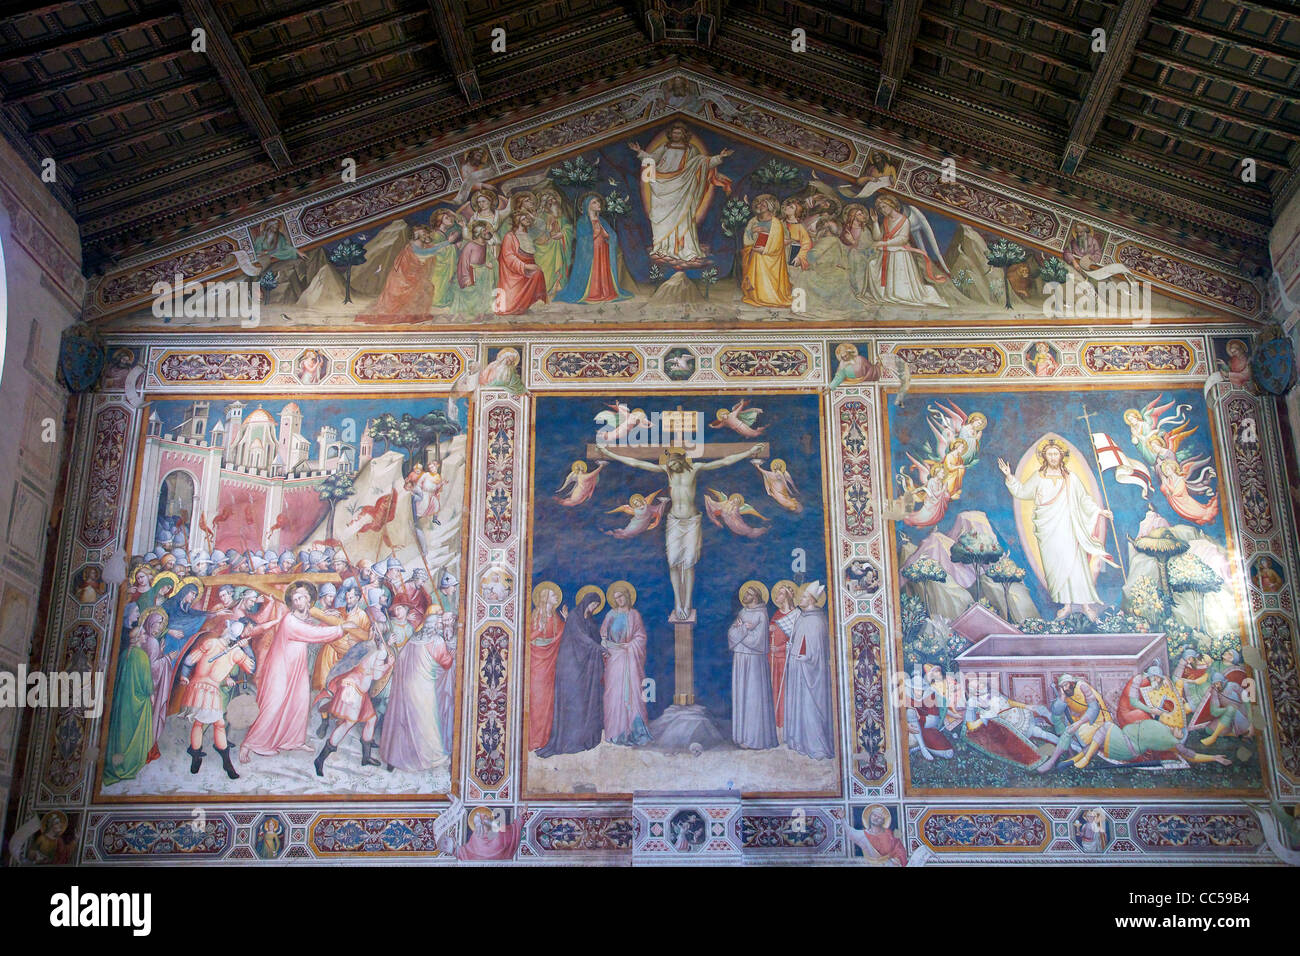 Sacristie fresques, la Basilique de Santa Croce, Florence, Toscane, Italie Banque D'Images